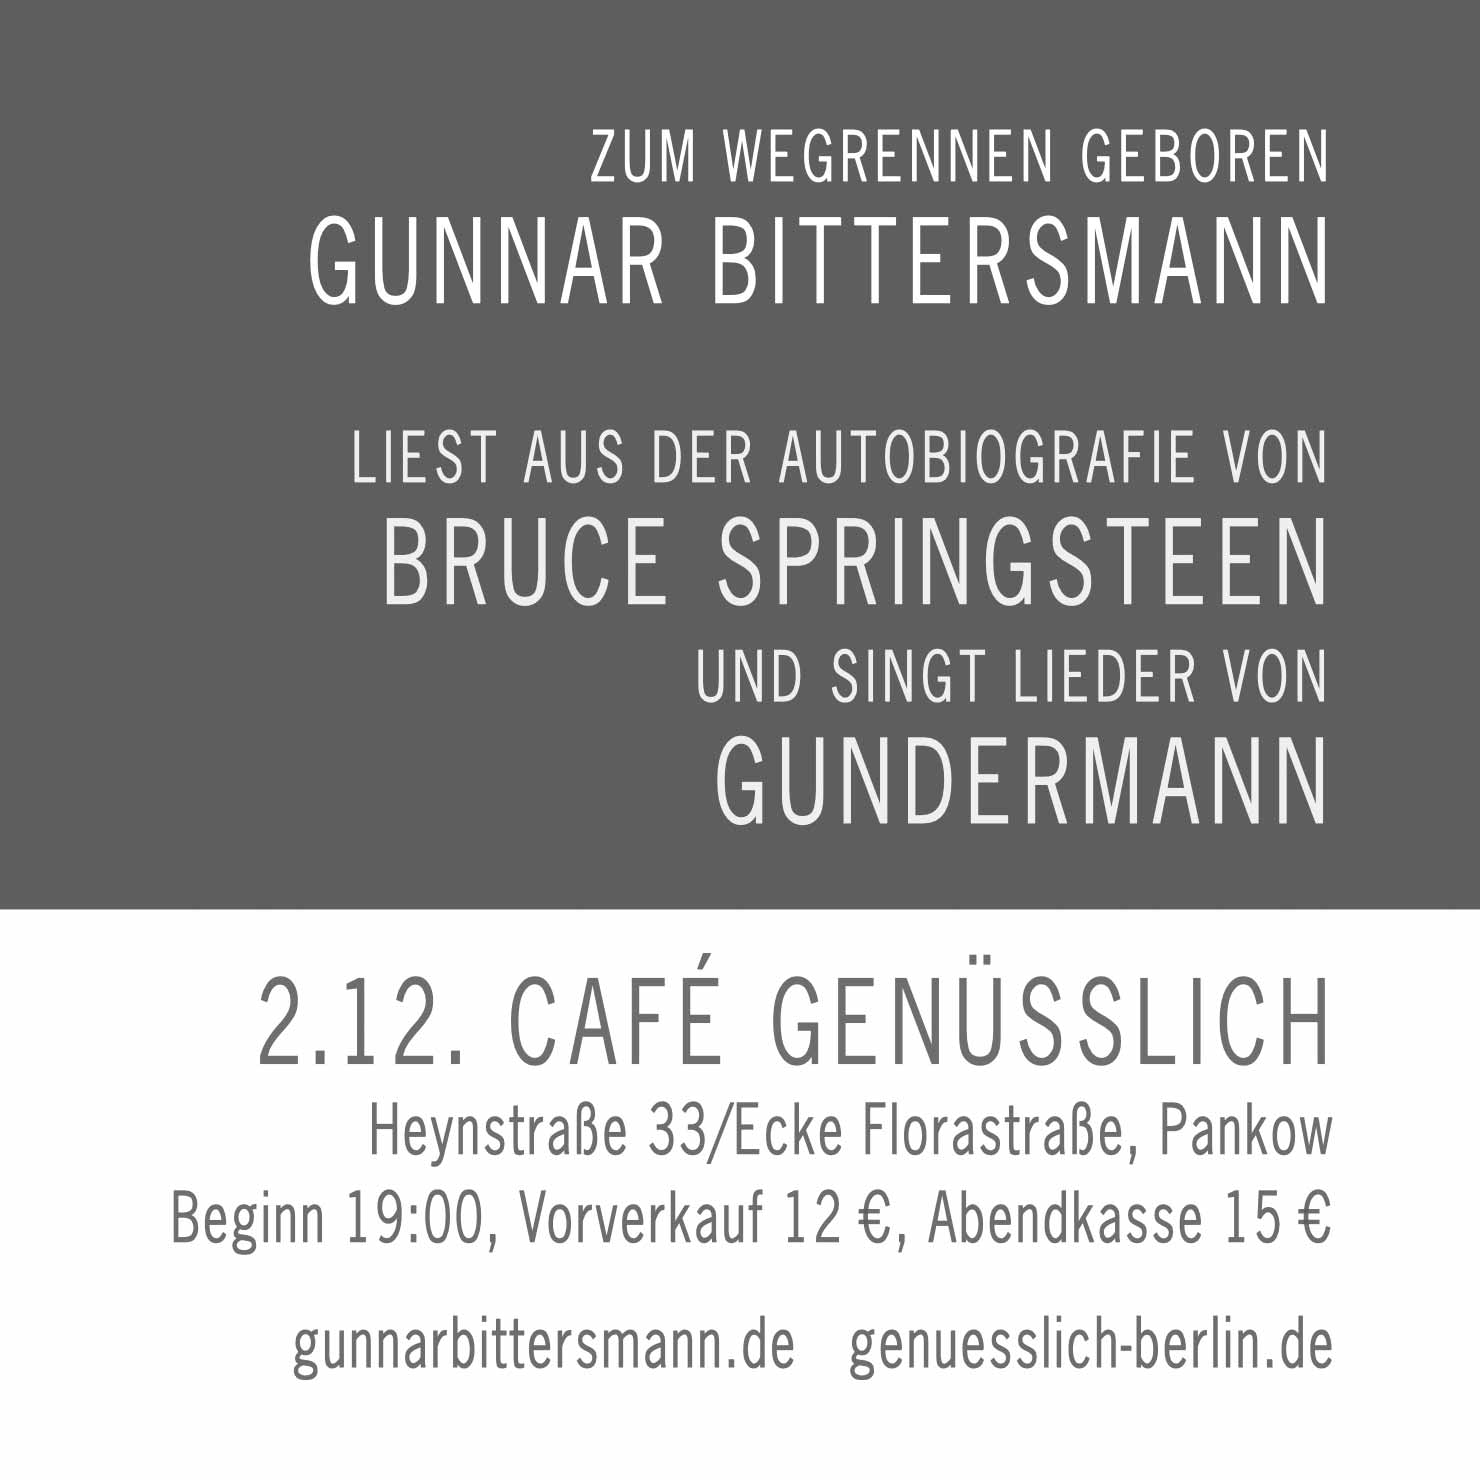 Zum Wegrennen geboren. Gunnar Bittersmannn liest aus Springsteens Autobiografie und singt Lieder von Gundermann. 2.12. Café Genüsslich, Heynstraße 33/Ecke Florastraße, Pankow.